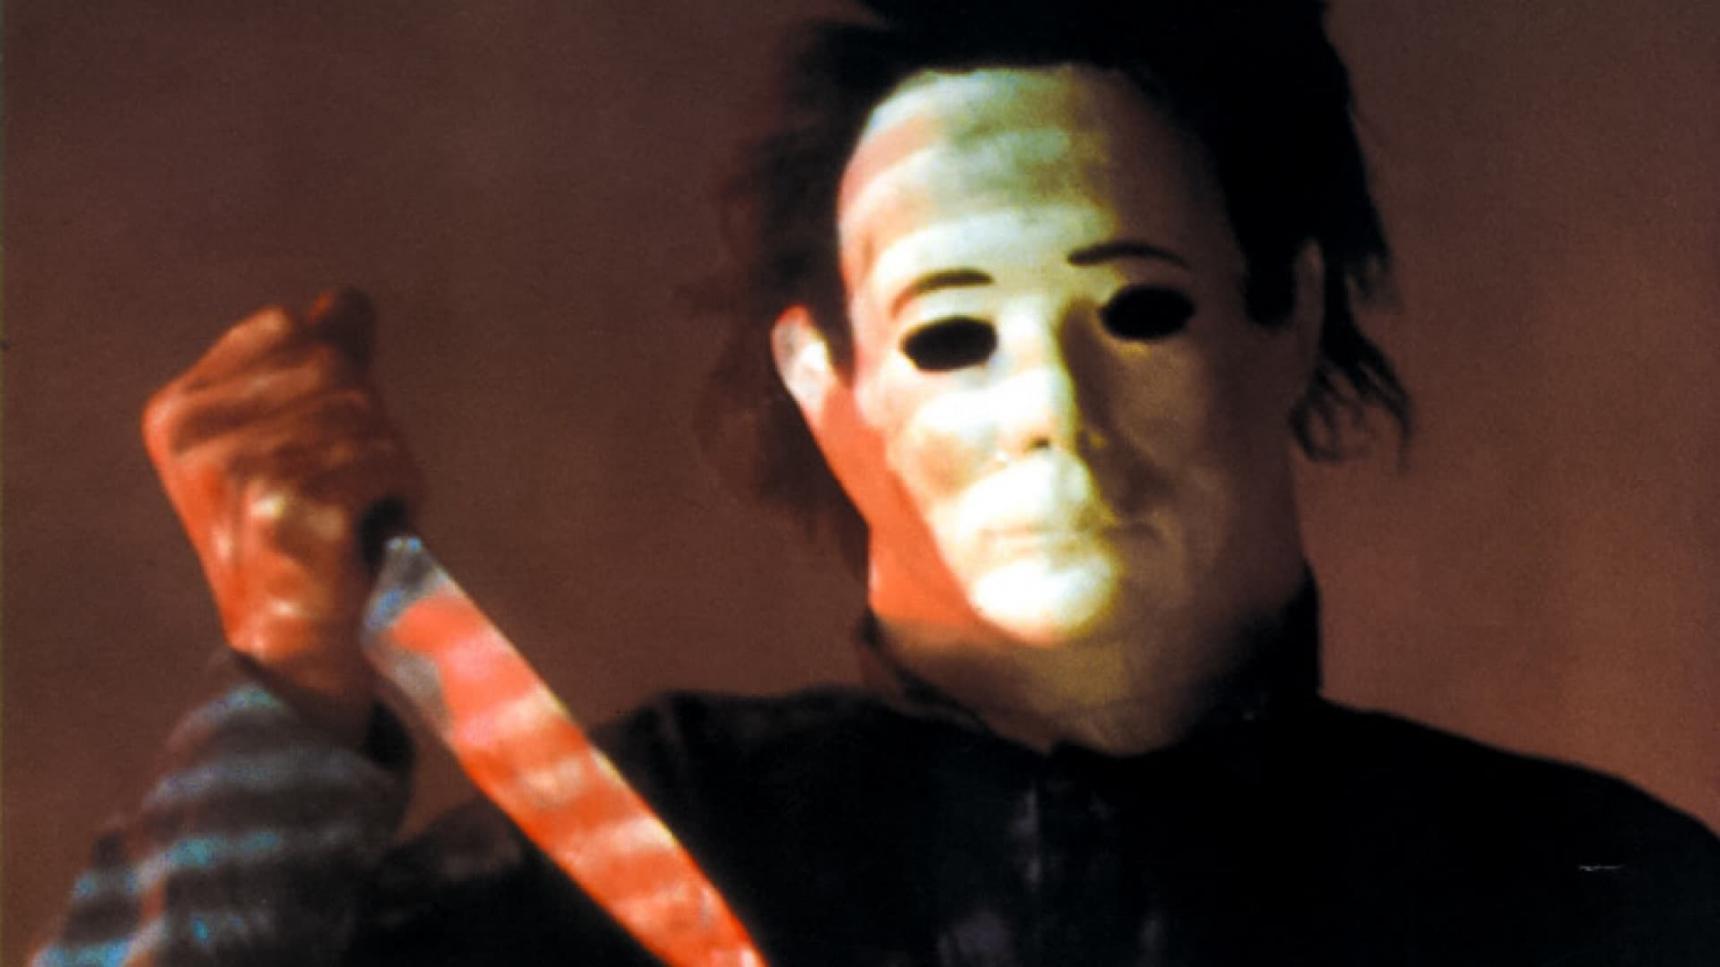 Fondo de pantalla de la película Halloween 4: El regreso de Michael Myers en Cliver.tv gratis